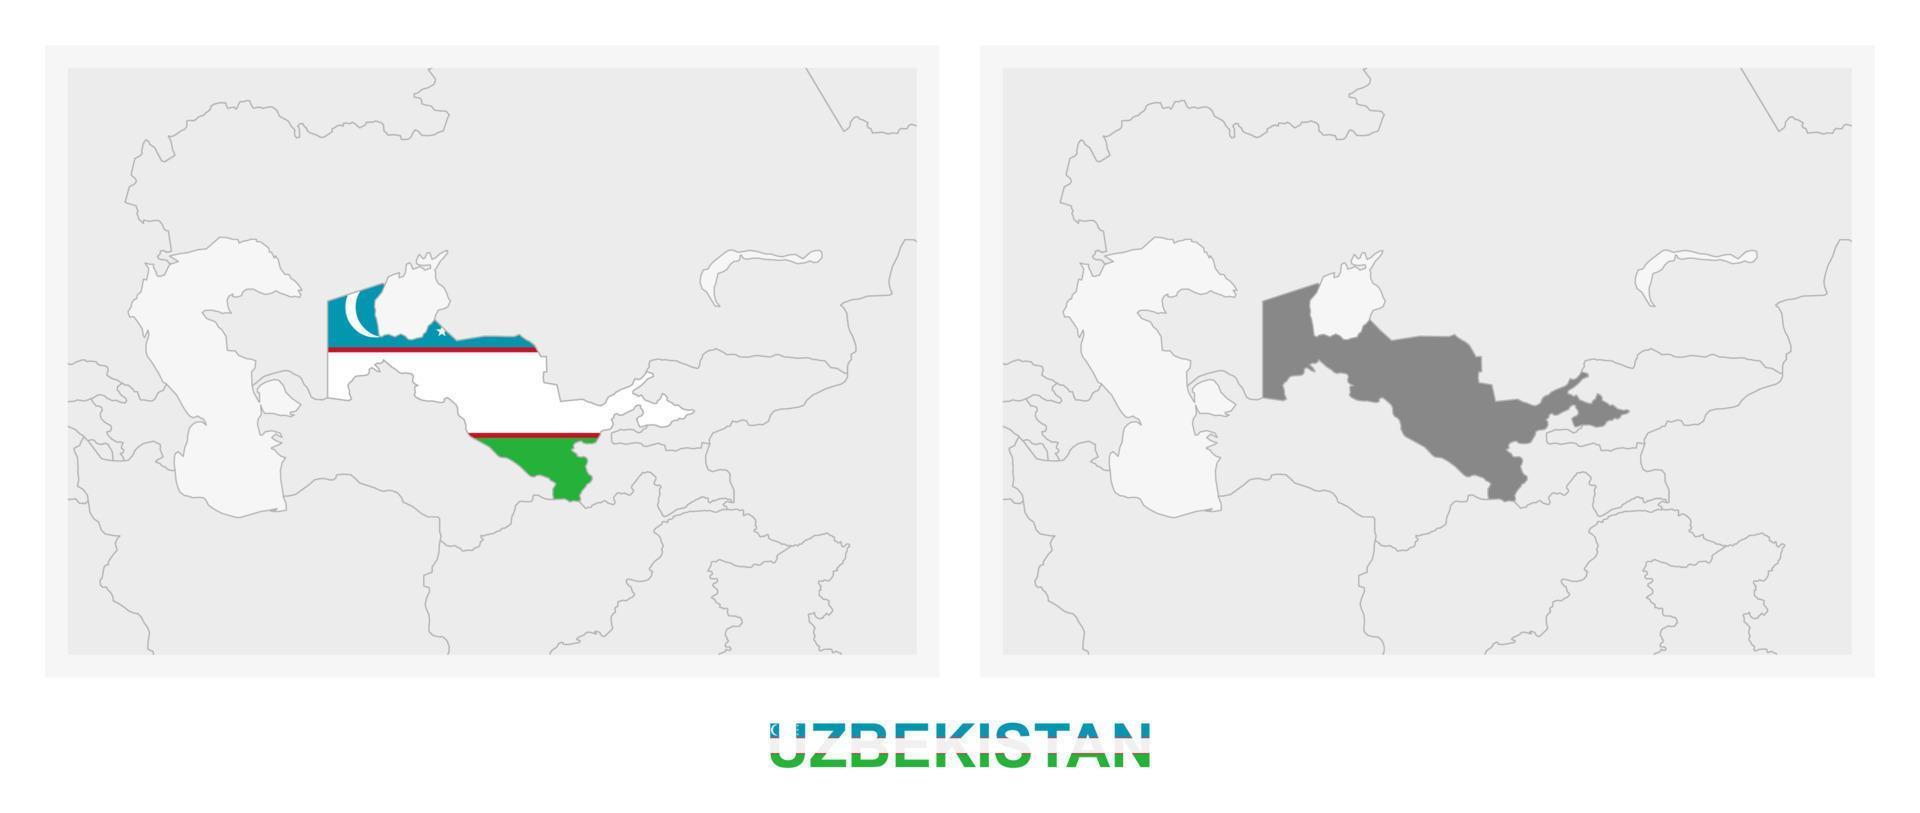 Zwei Versionen der Karte von Usbekistan, mit der Flagge von Usbekistan und dunkelgrau hervorgehoben. vektor